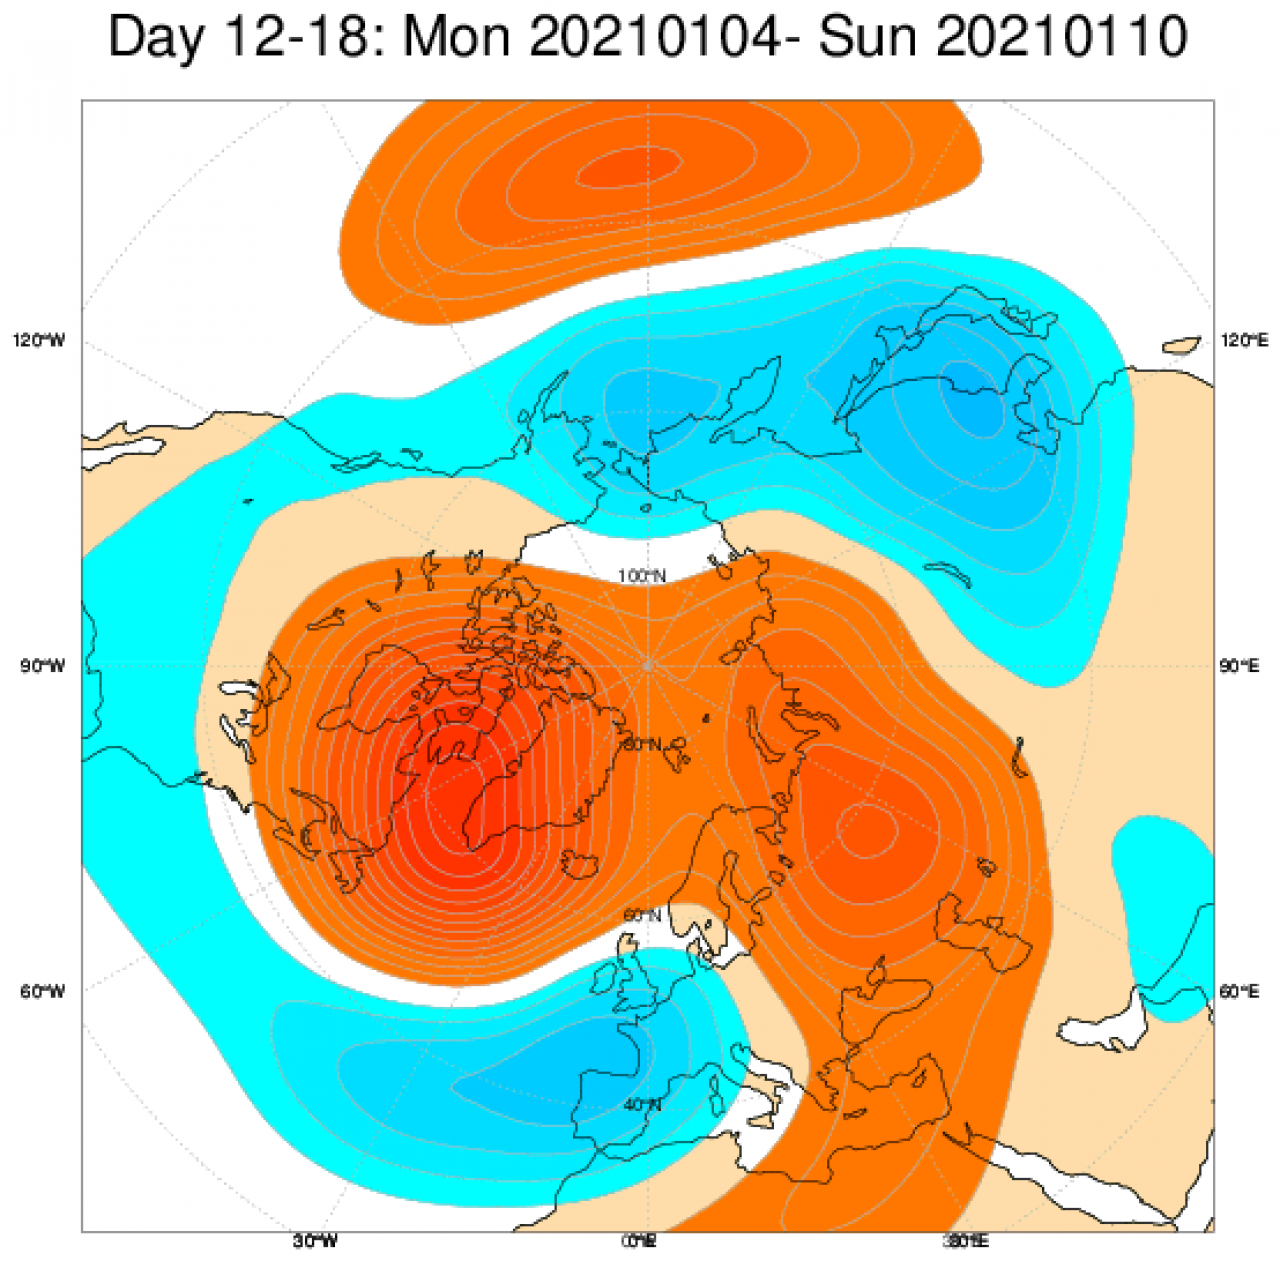 Le anomalie di geopotenziale secondo il modello ECMWF mediate nel periodo 4-10 gennaio